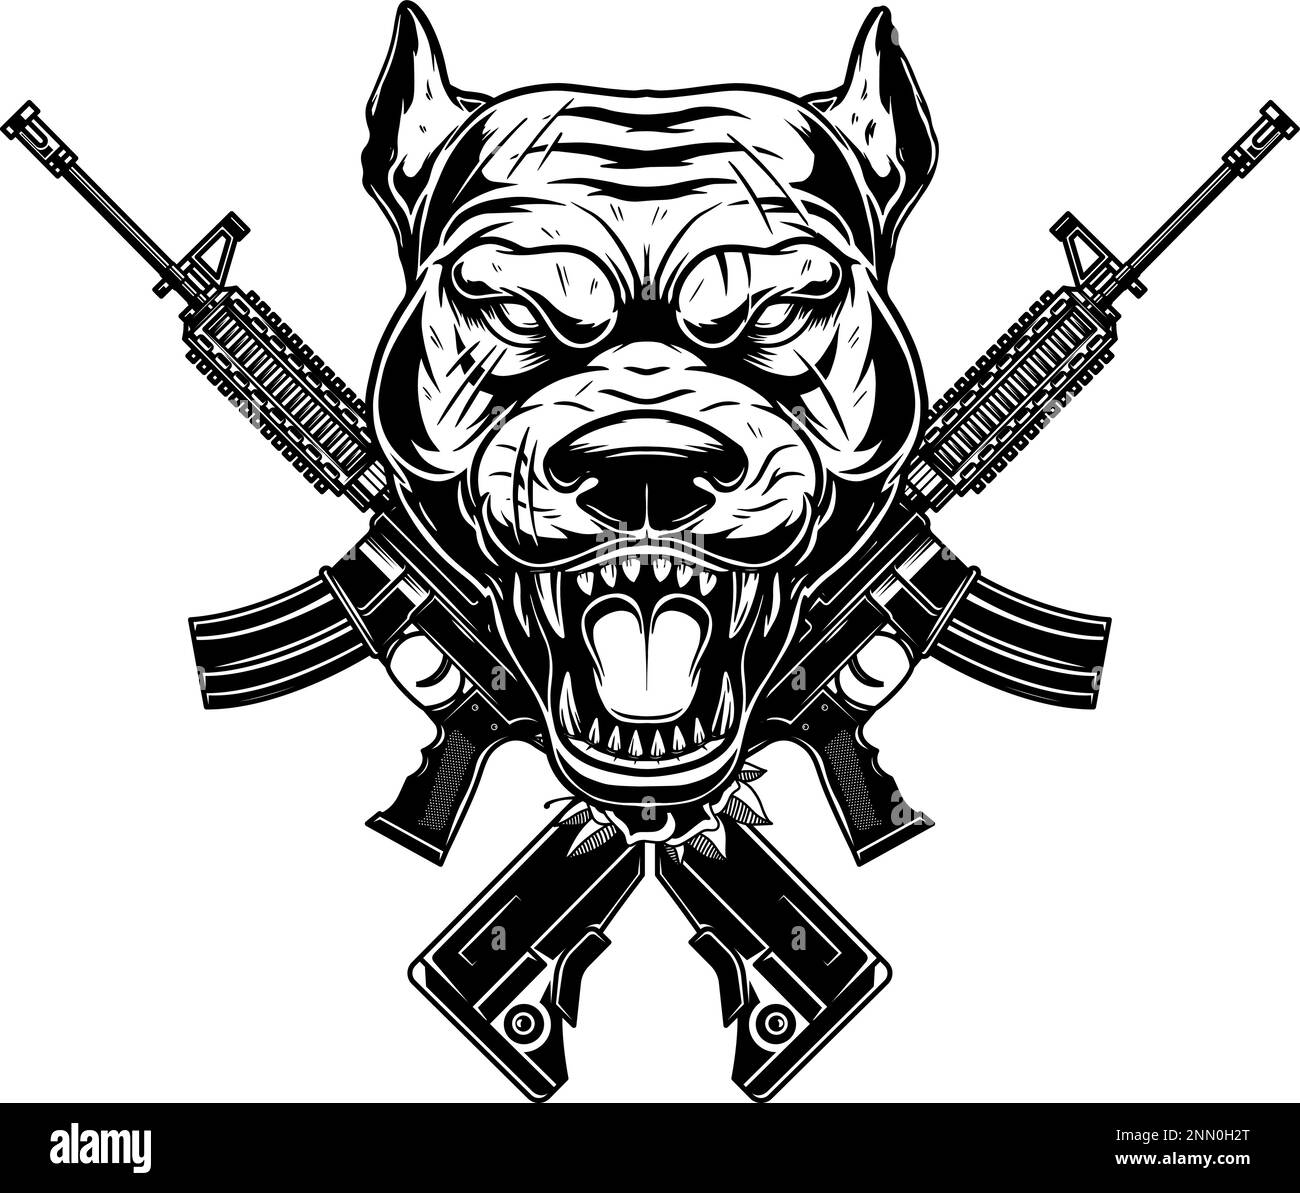 Tête de chien en colère avec fusils d'assaut croisés. Élément de conception pour affiche, emblème, affiche. Illustration vectorielle Illustration de Vecteur